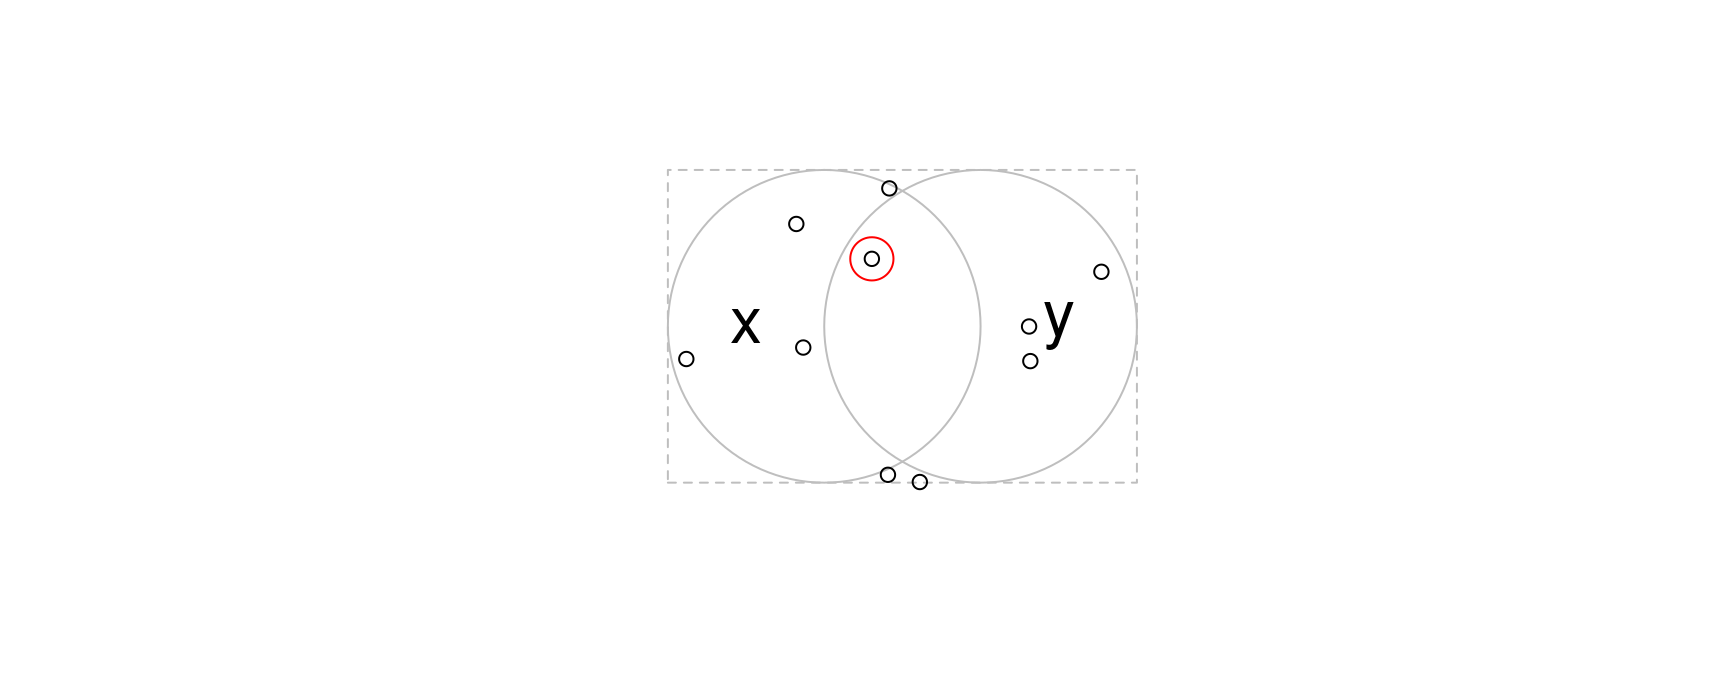 Points distribués de manière aléatoire dans le cadre englobant les cercles x et y. Les points qui croisent les deux objets x et y sont mis en évidence.